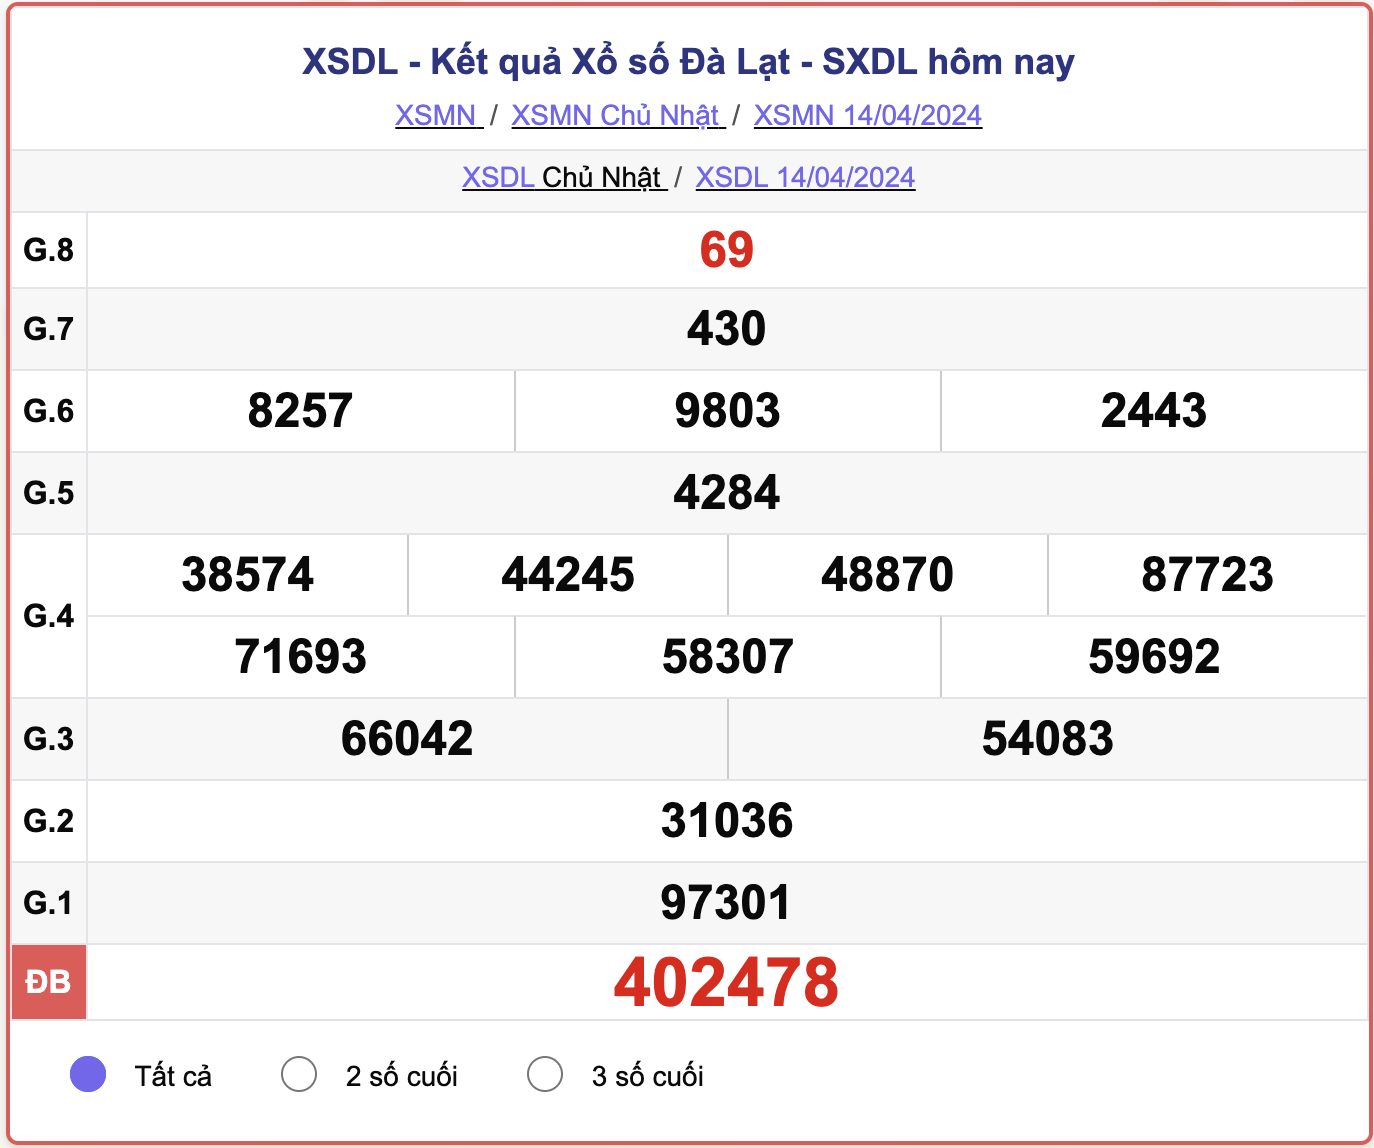 XSDL Chủ nhật, kết quả xổ số Đà Lạt ngày 14/4/2024.